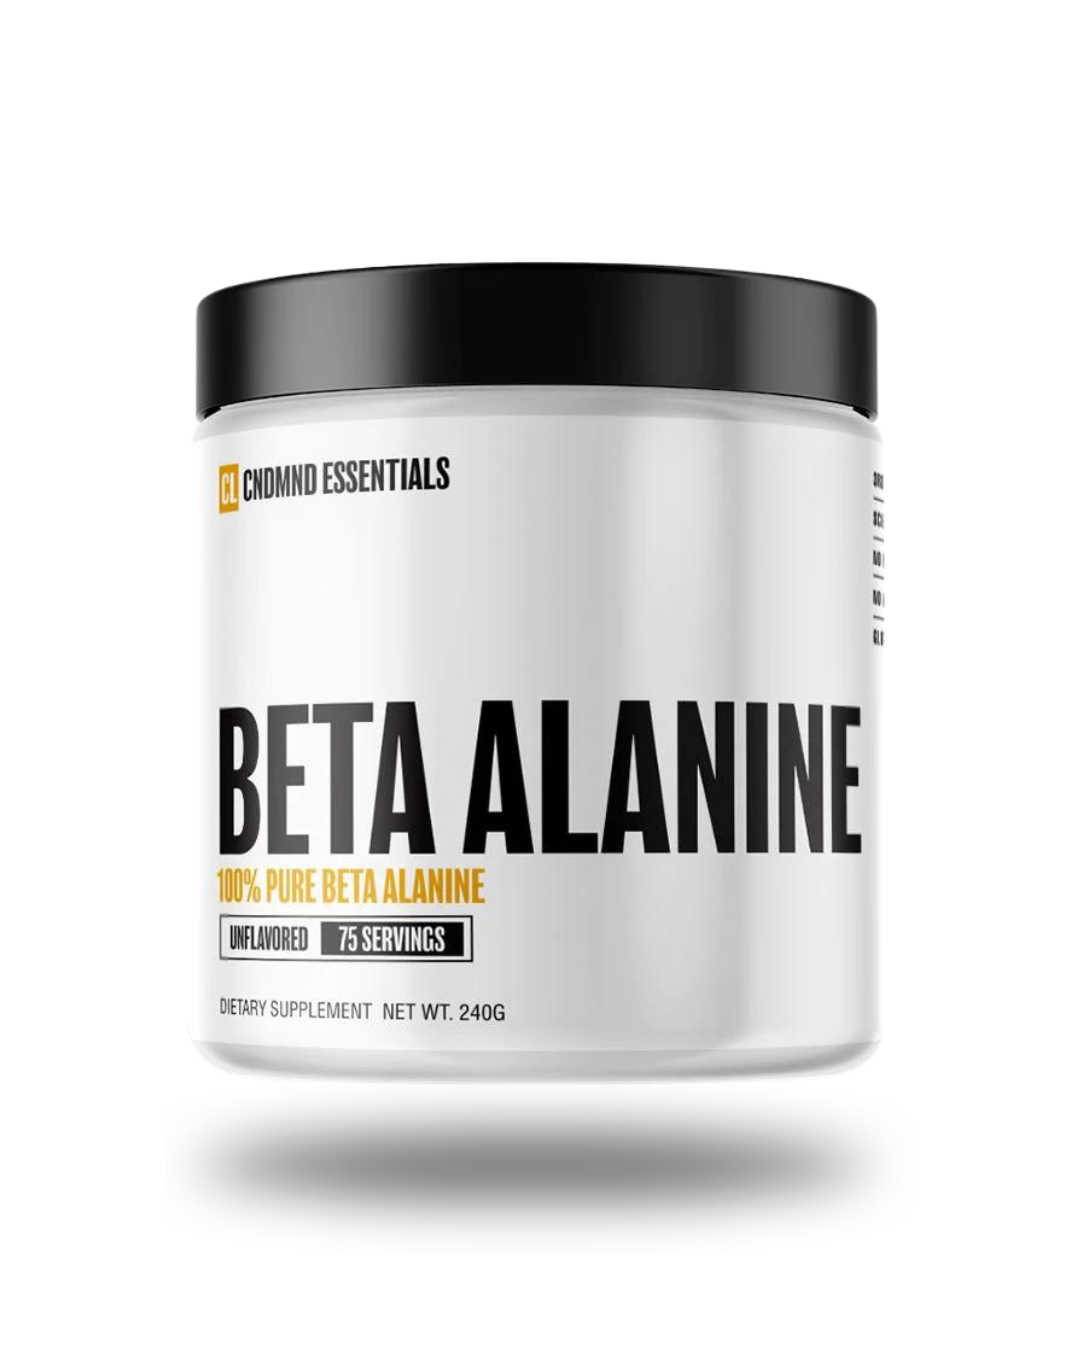 Condemned Essentials| Beta Alanine